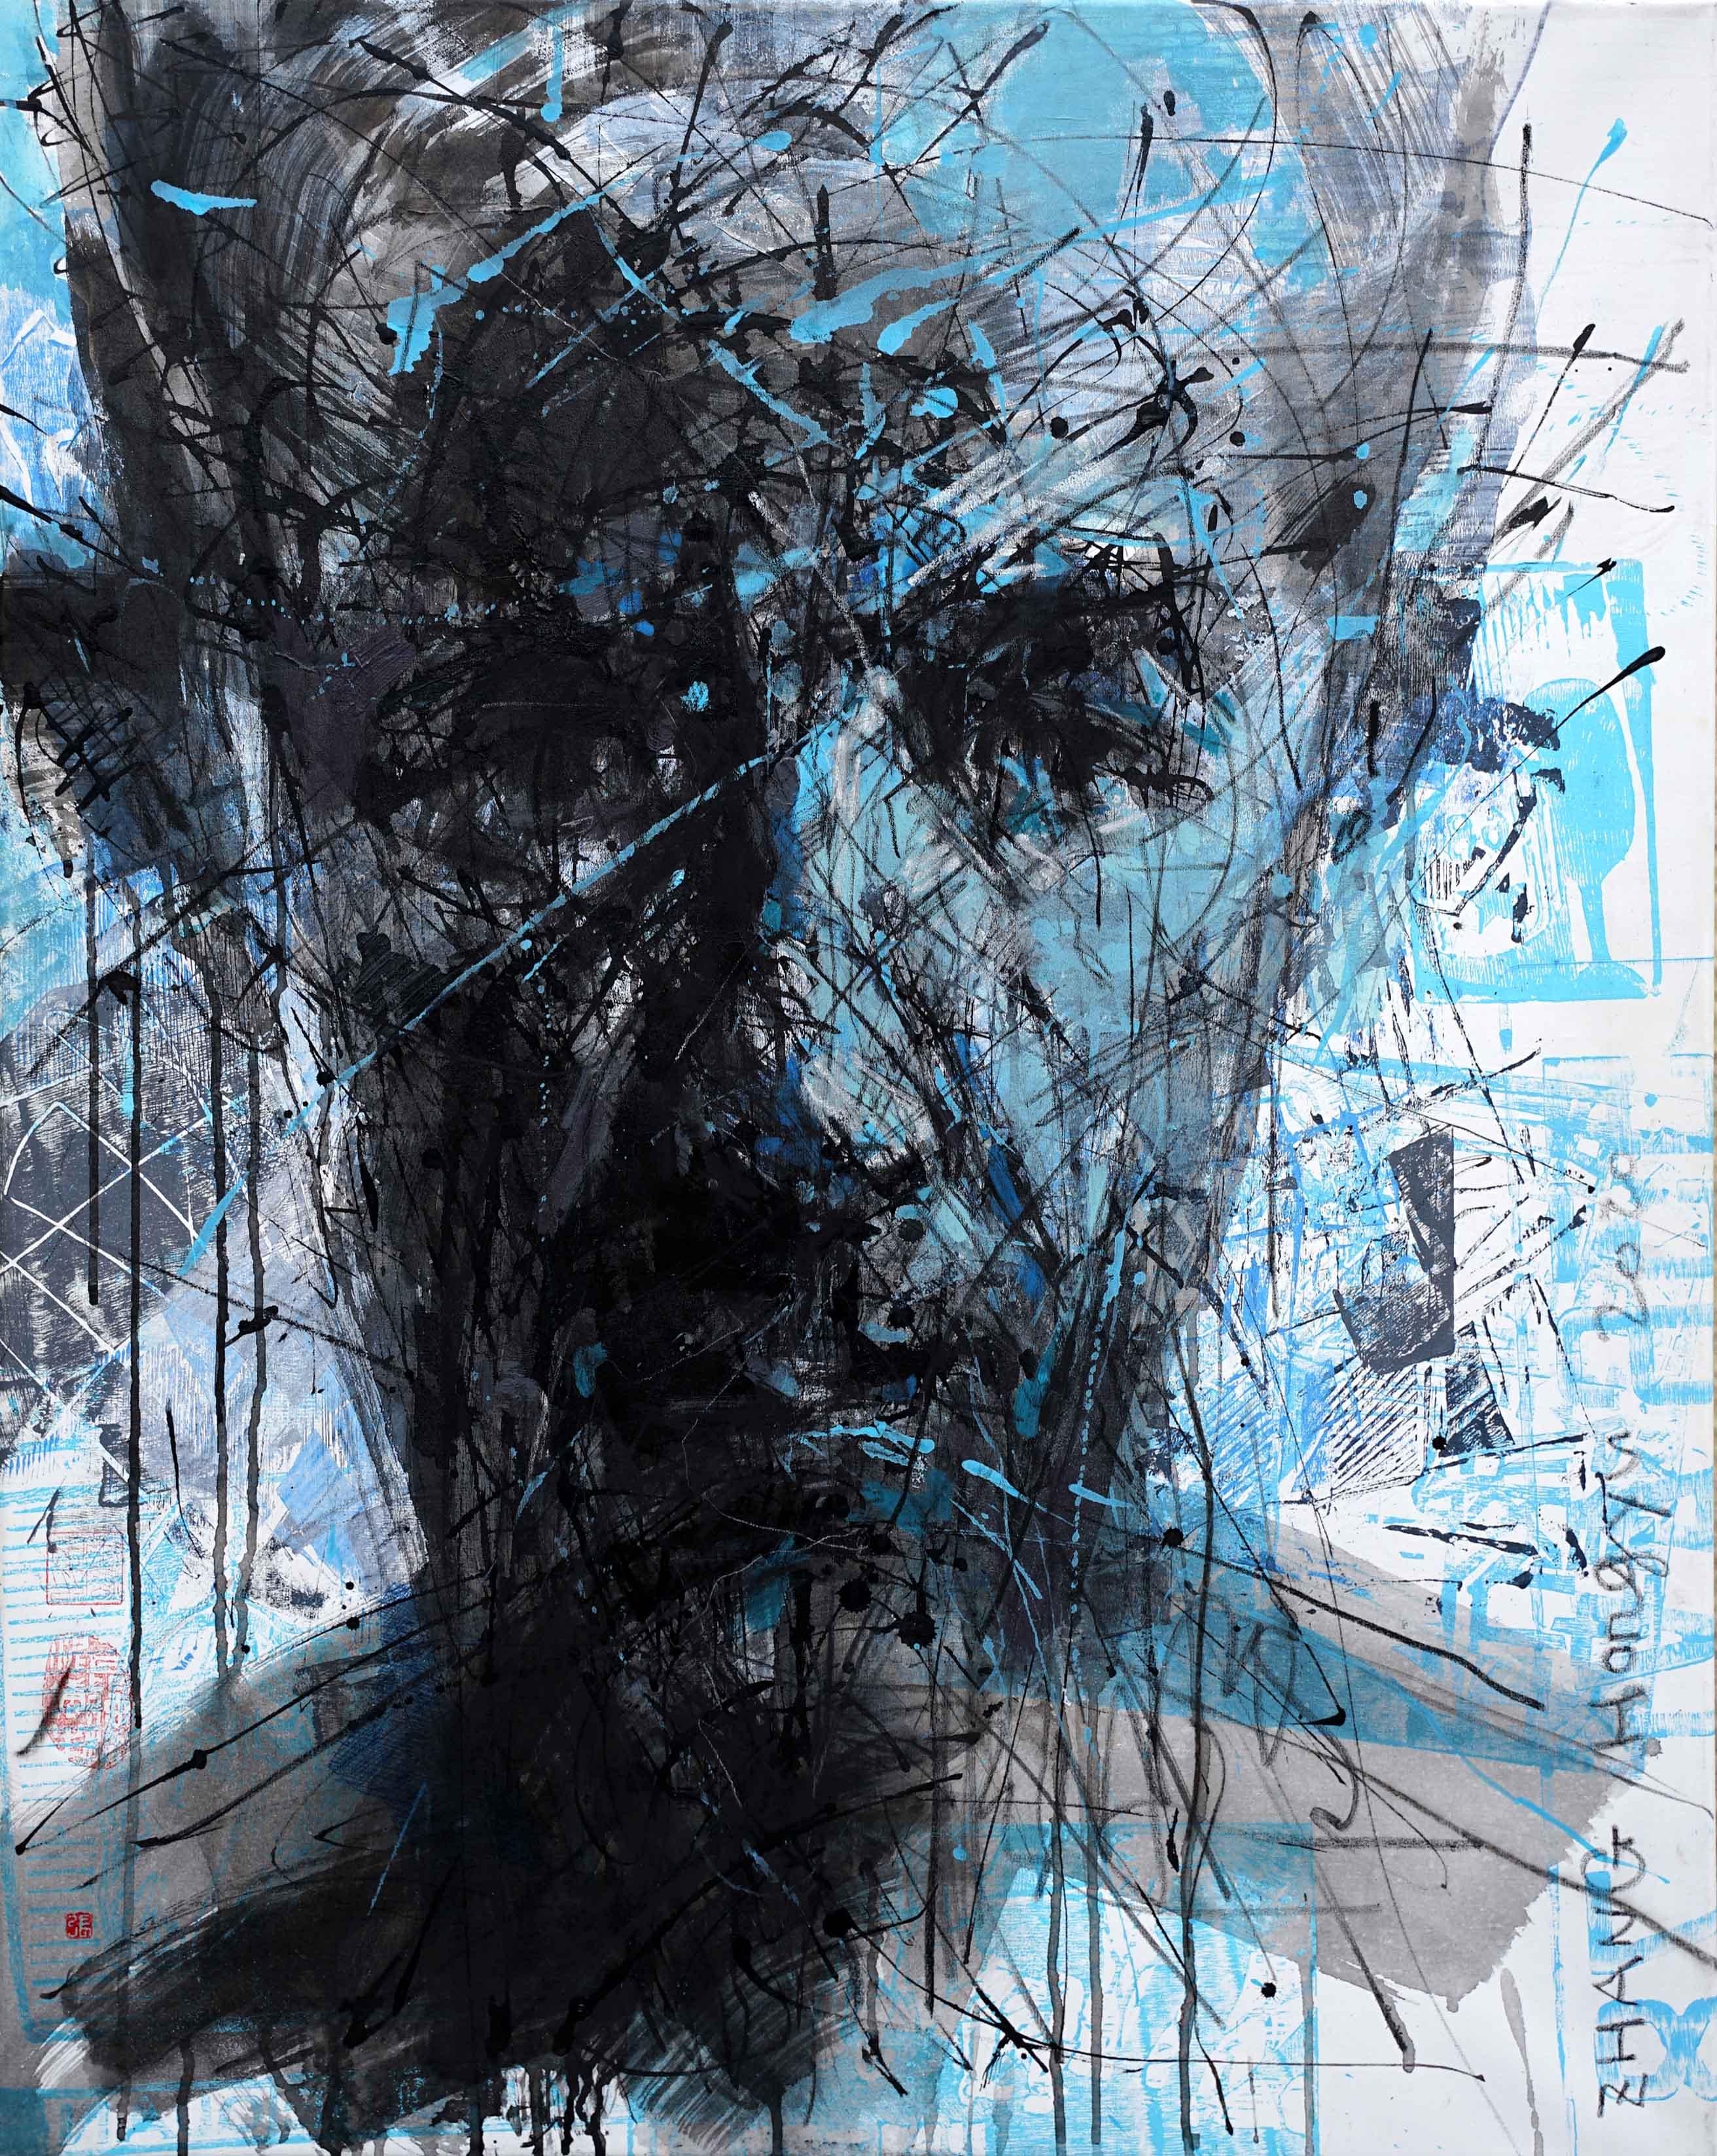 Zhang Hongyu Portrait Painting - No. 196 by Hongyu Zhang - Contemporary portrait painting, blue, abstract